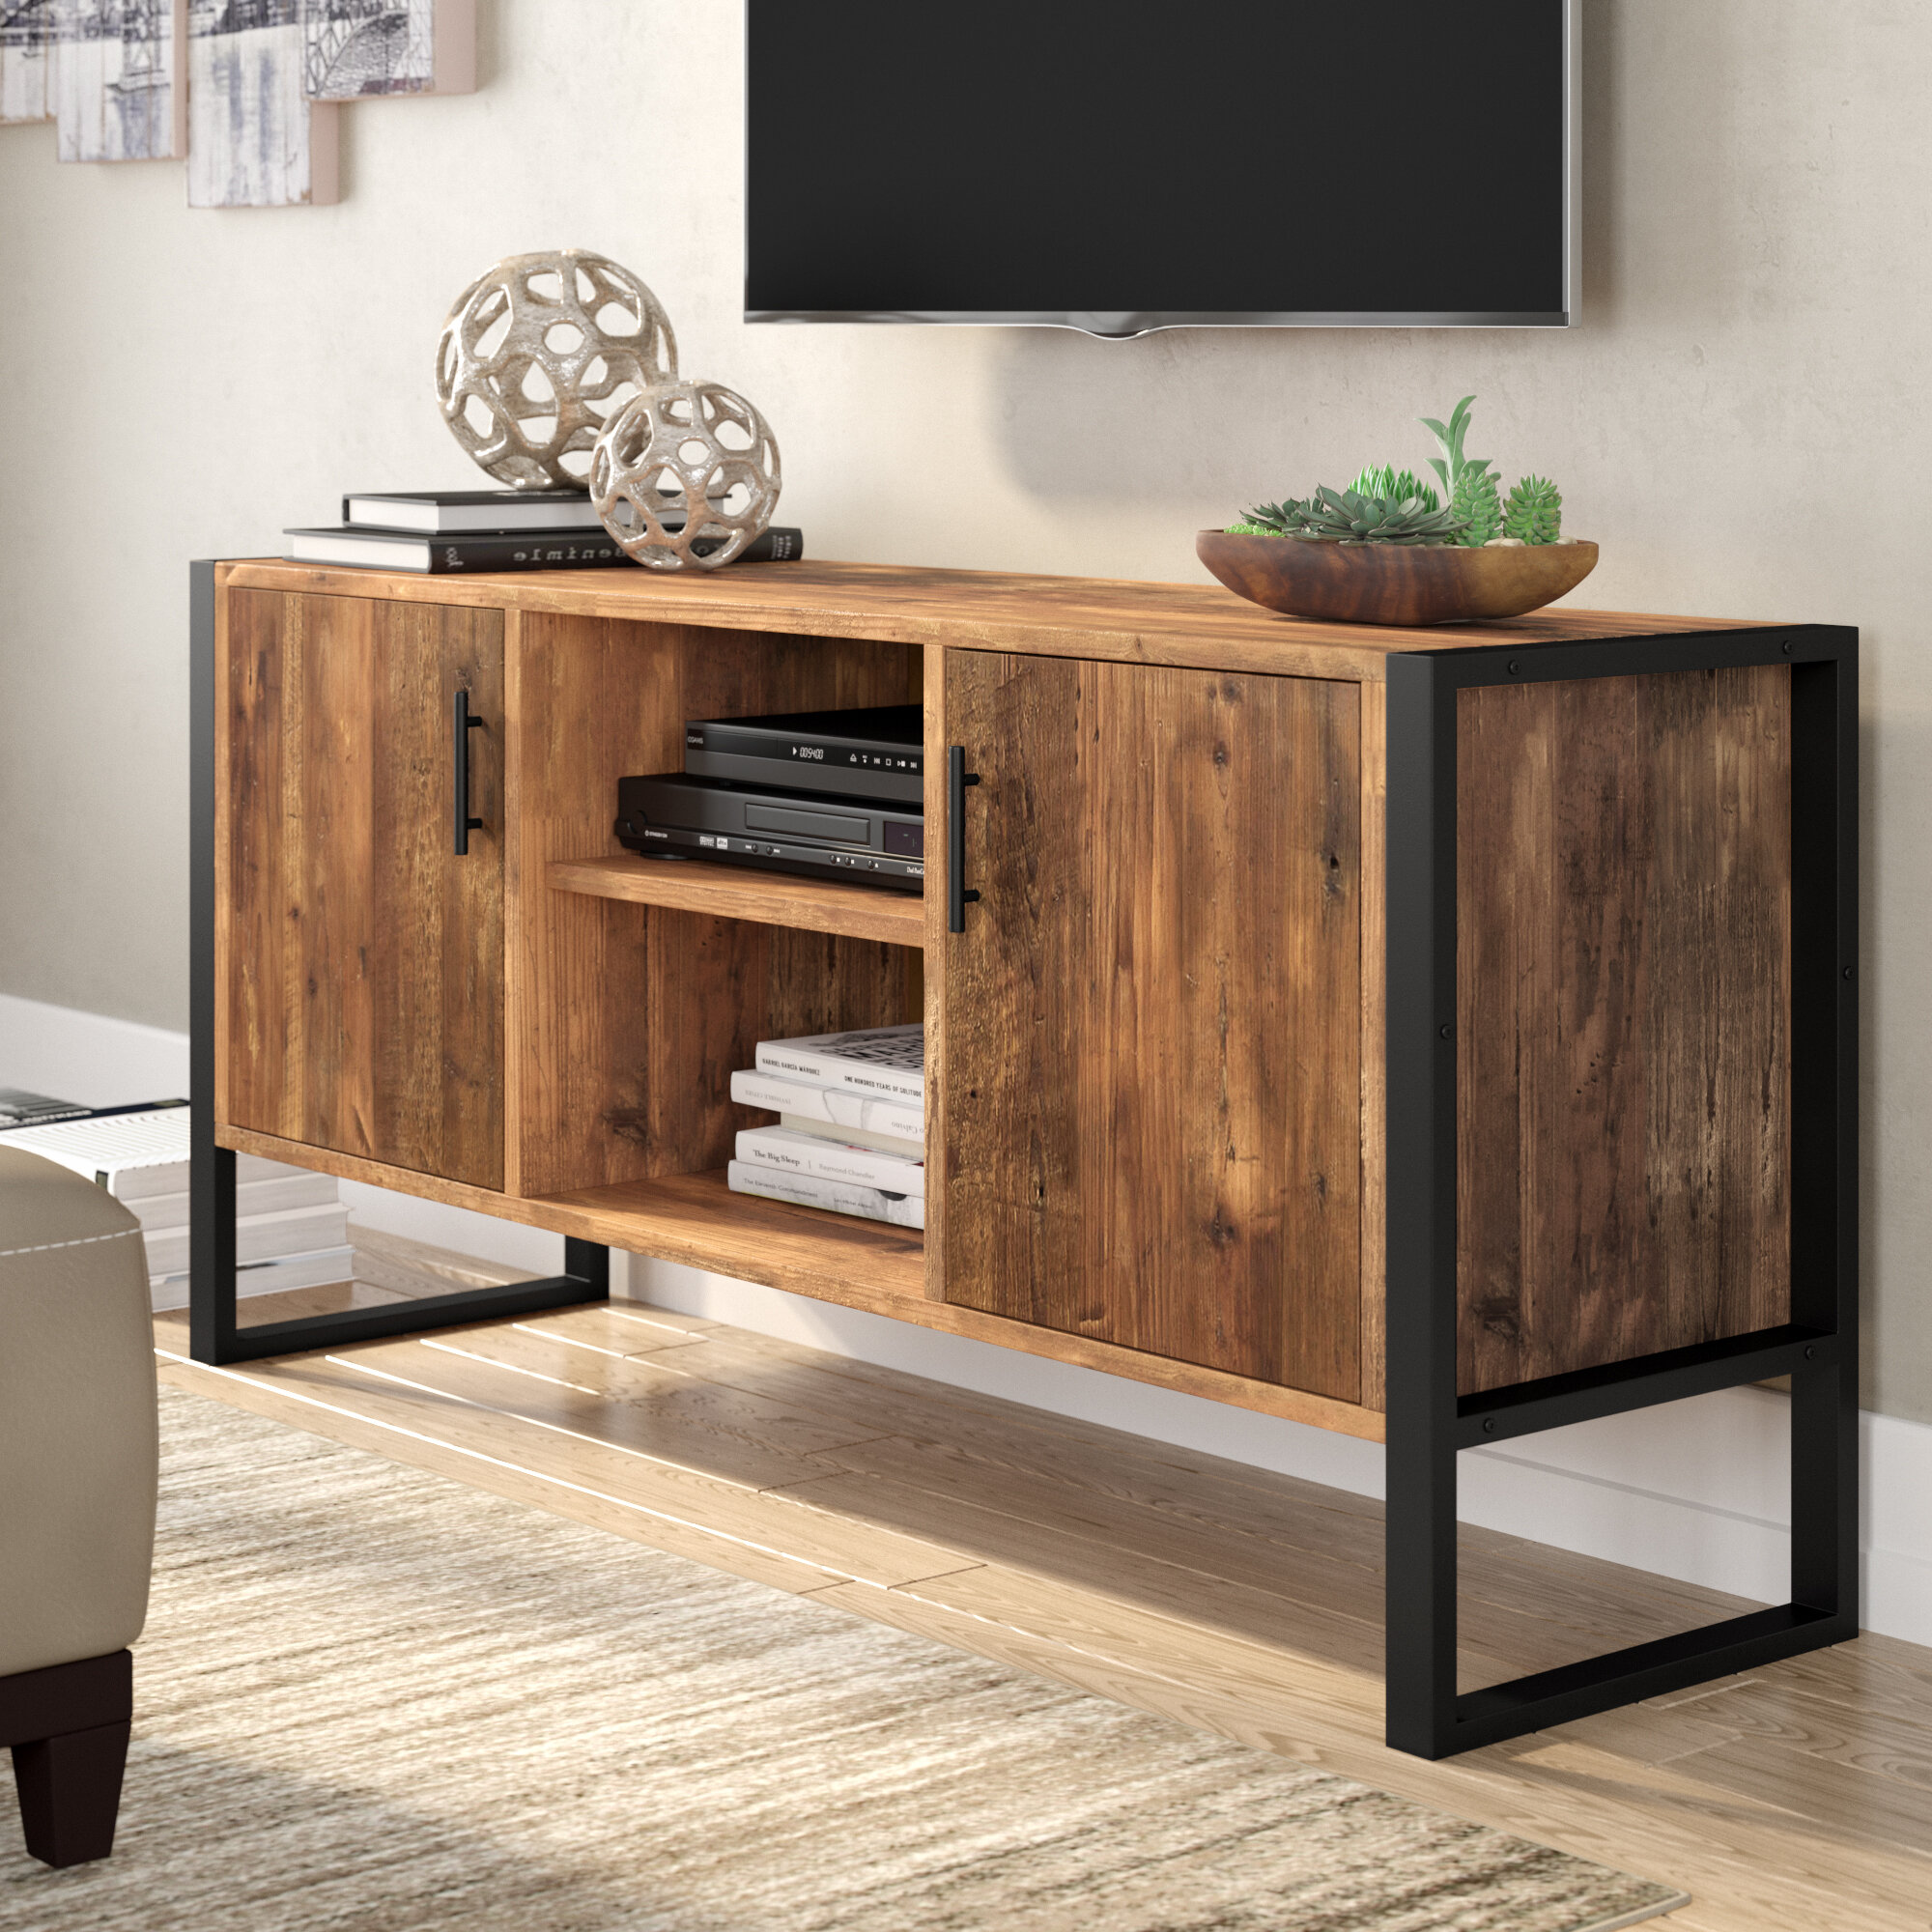 Rak Tv Minimalis Besi Holo Modern Unik 2021 Sobat Furniture